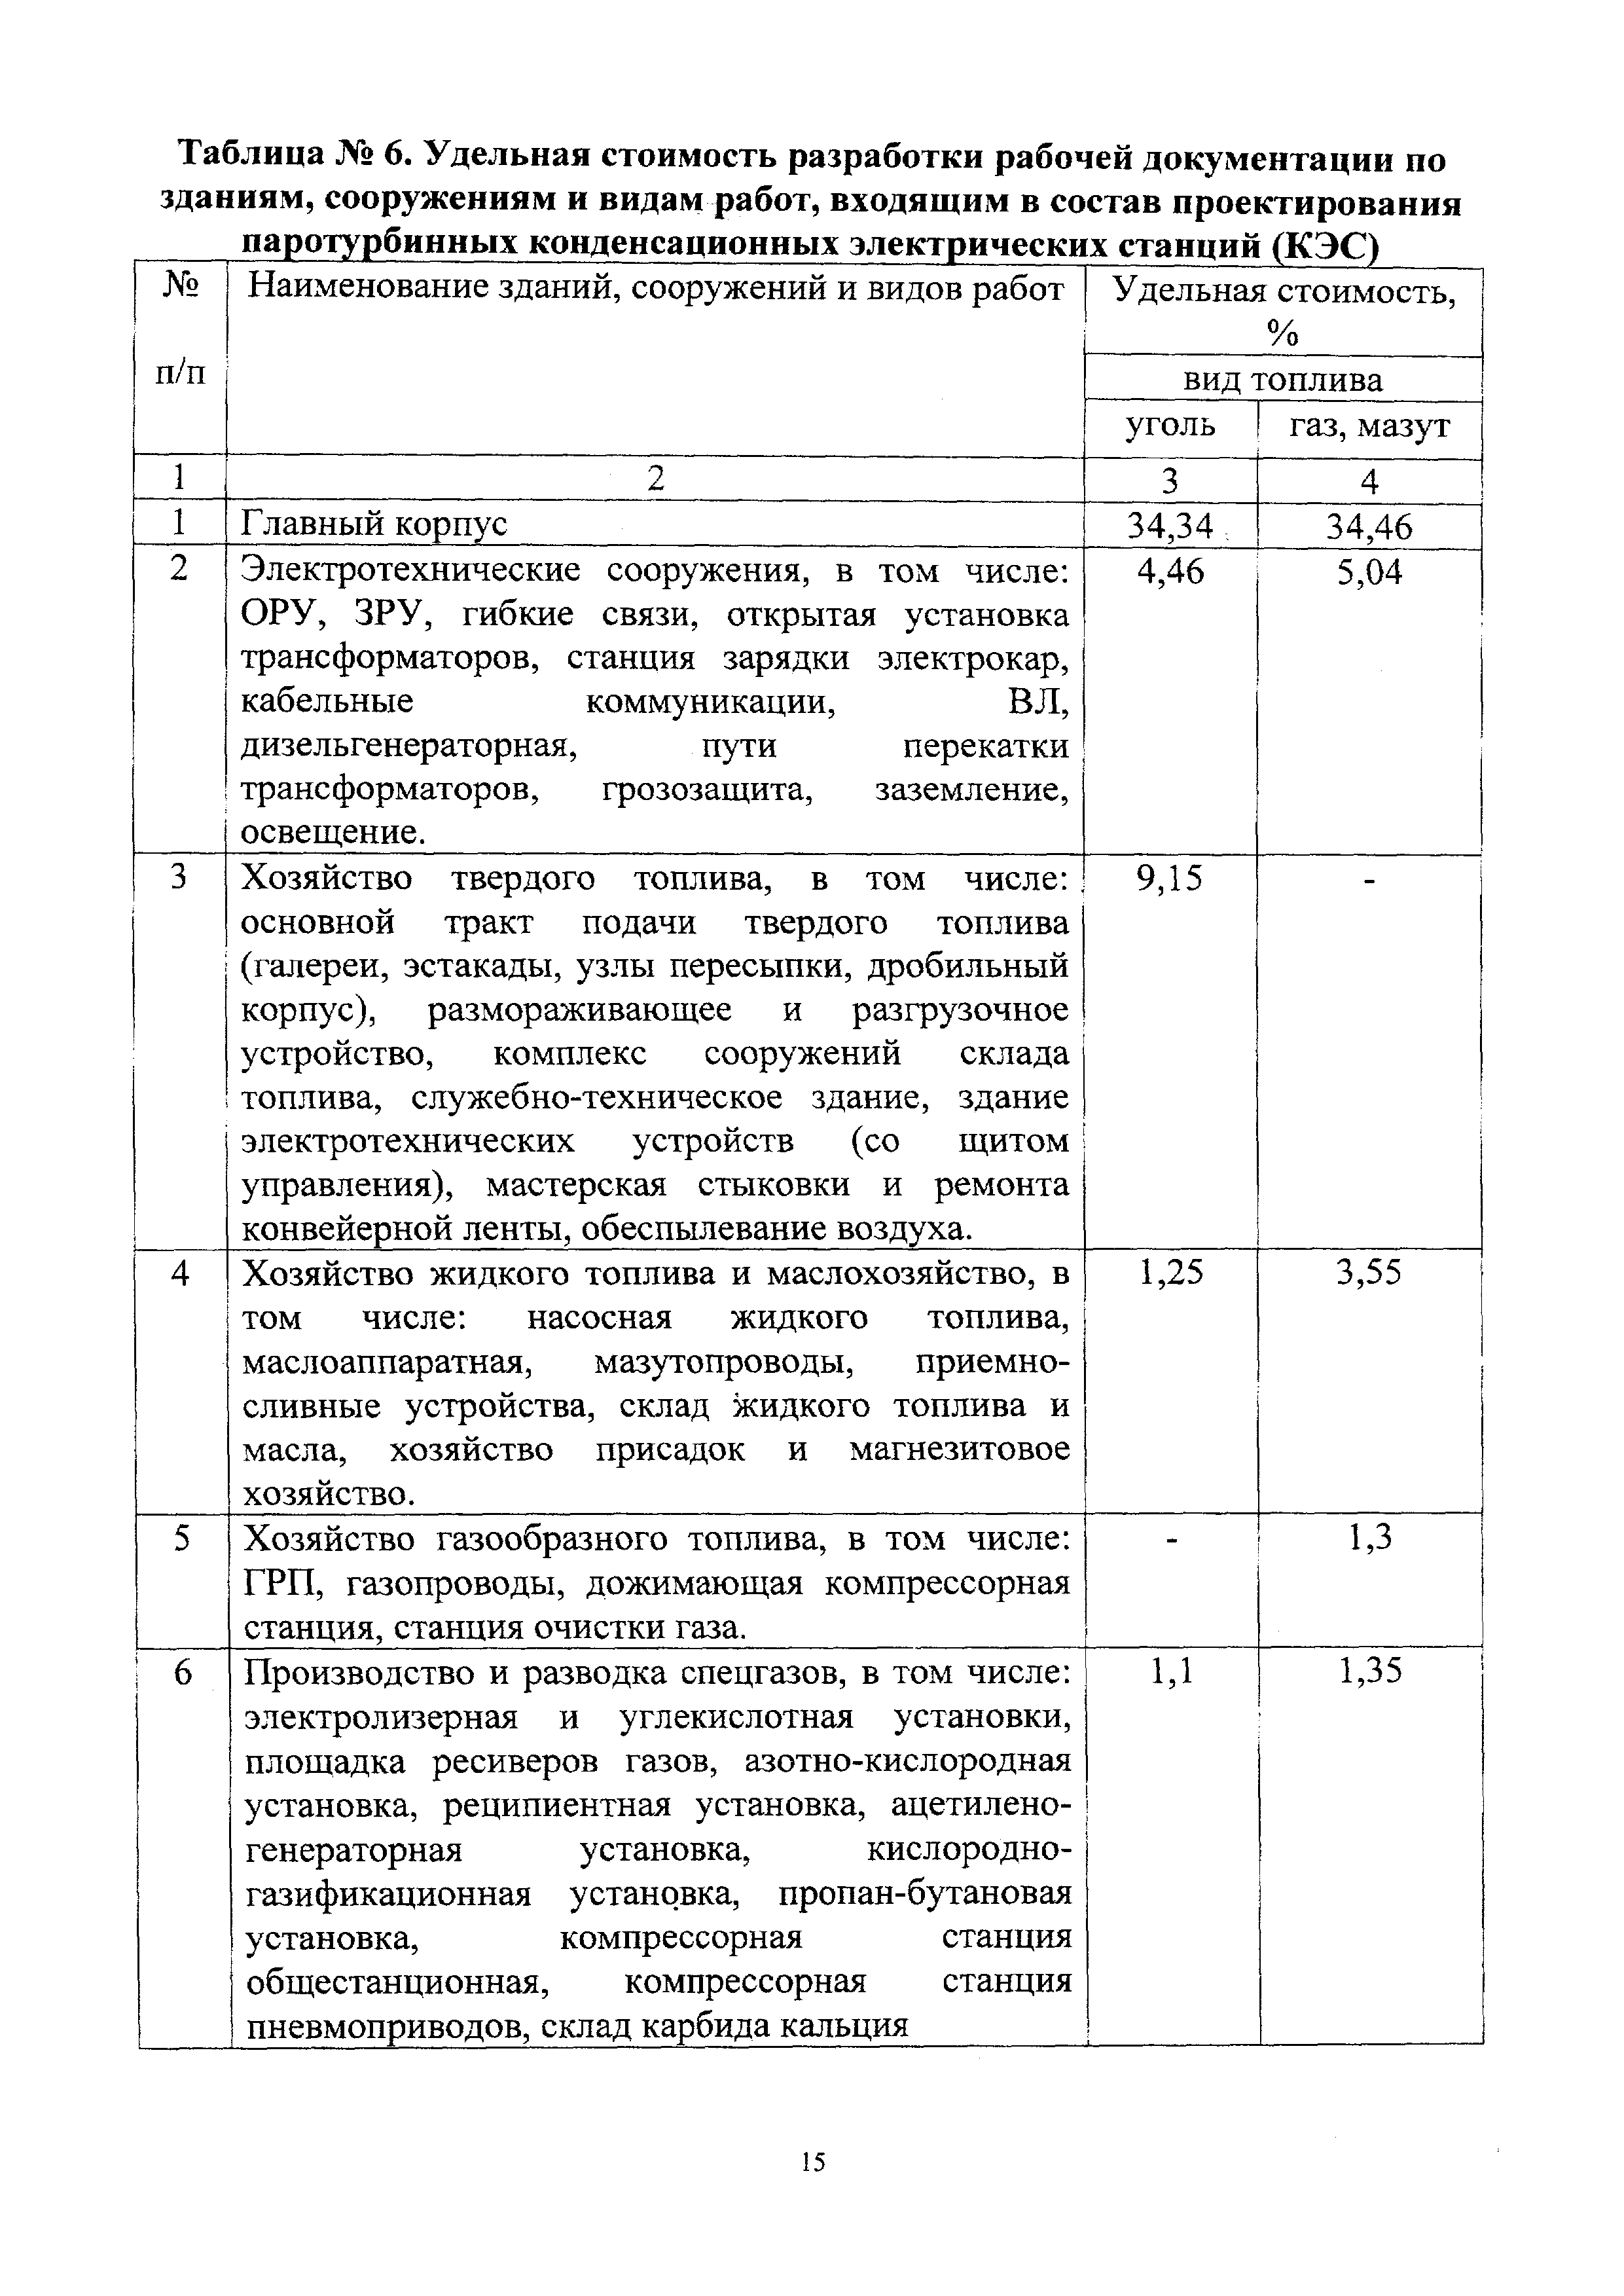 СБЦП 81-2001-23